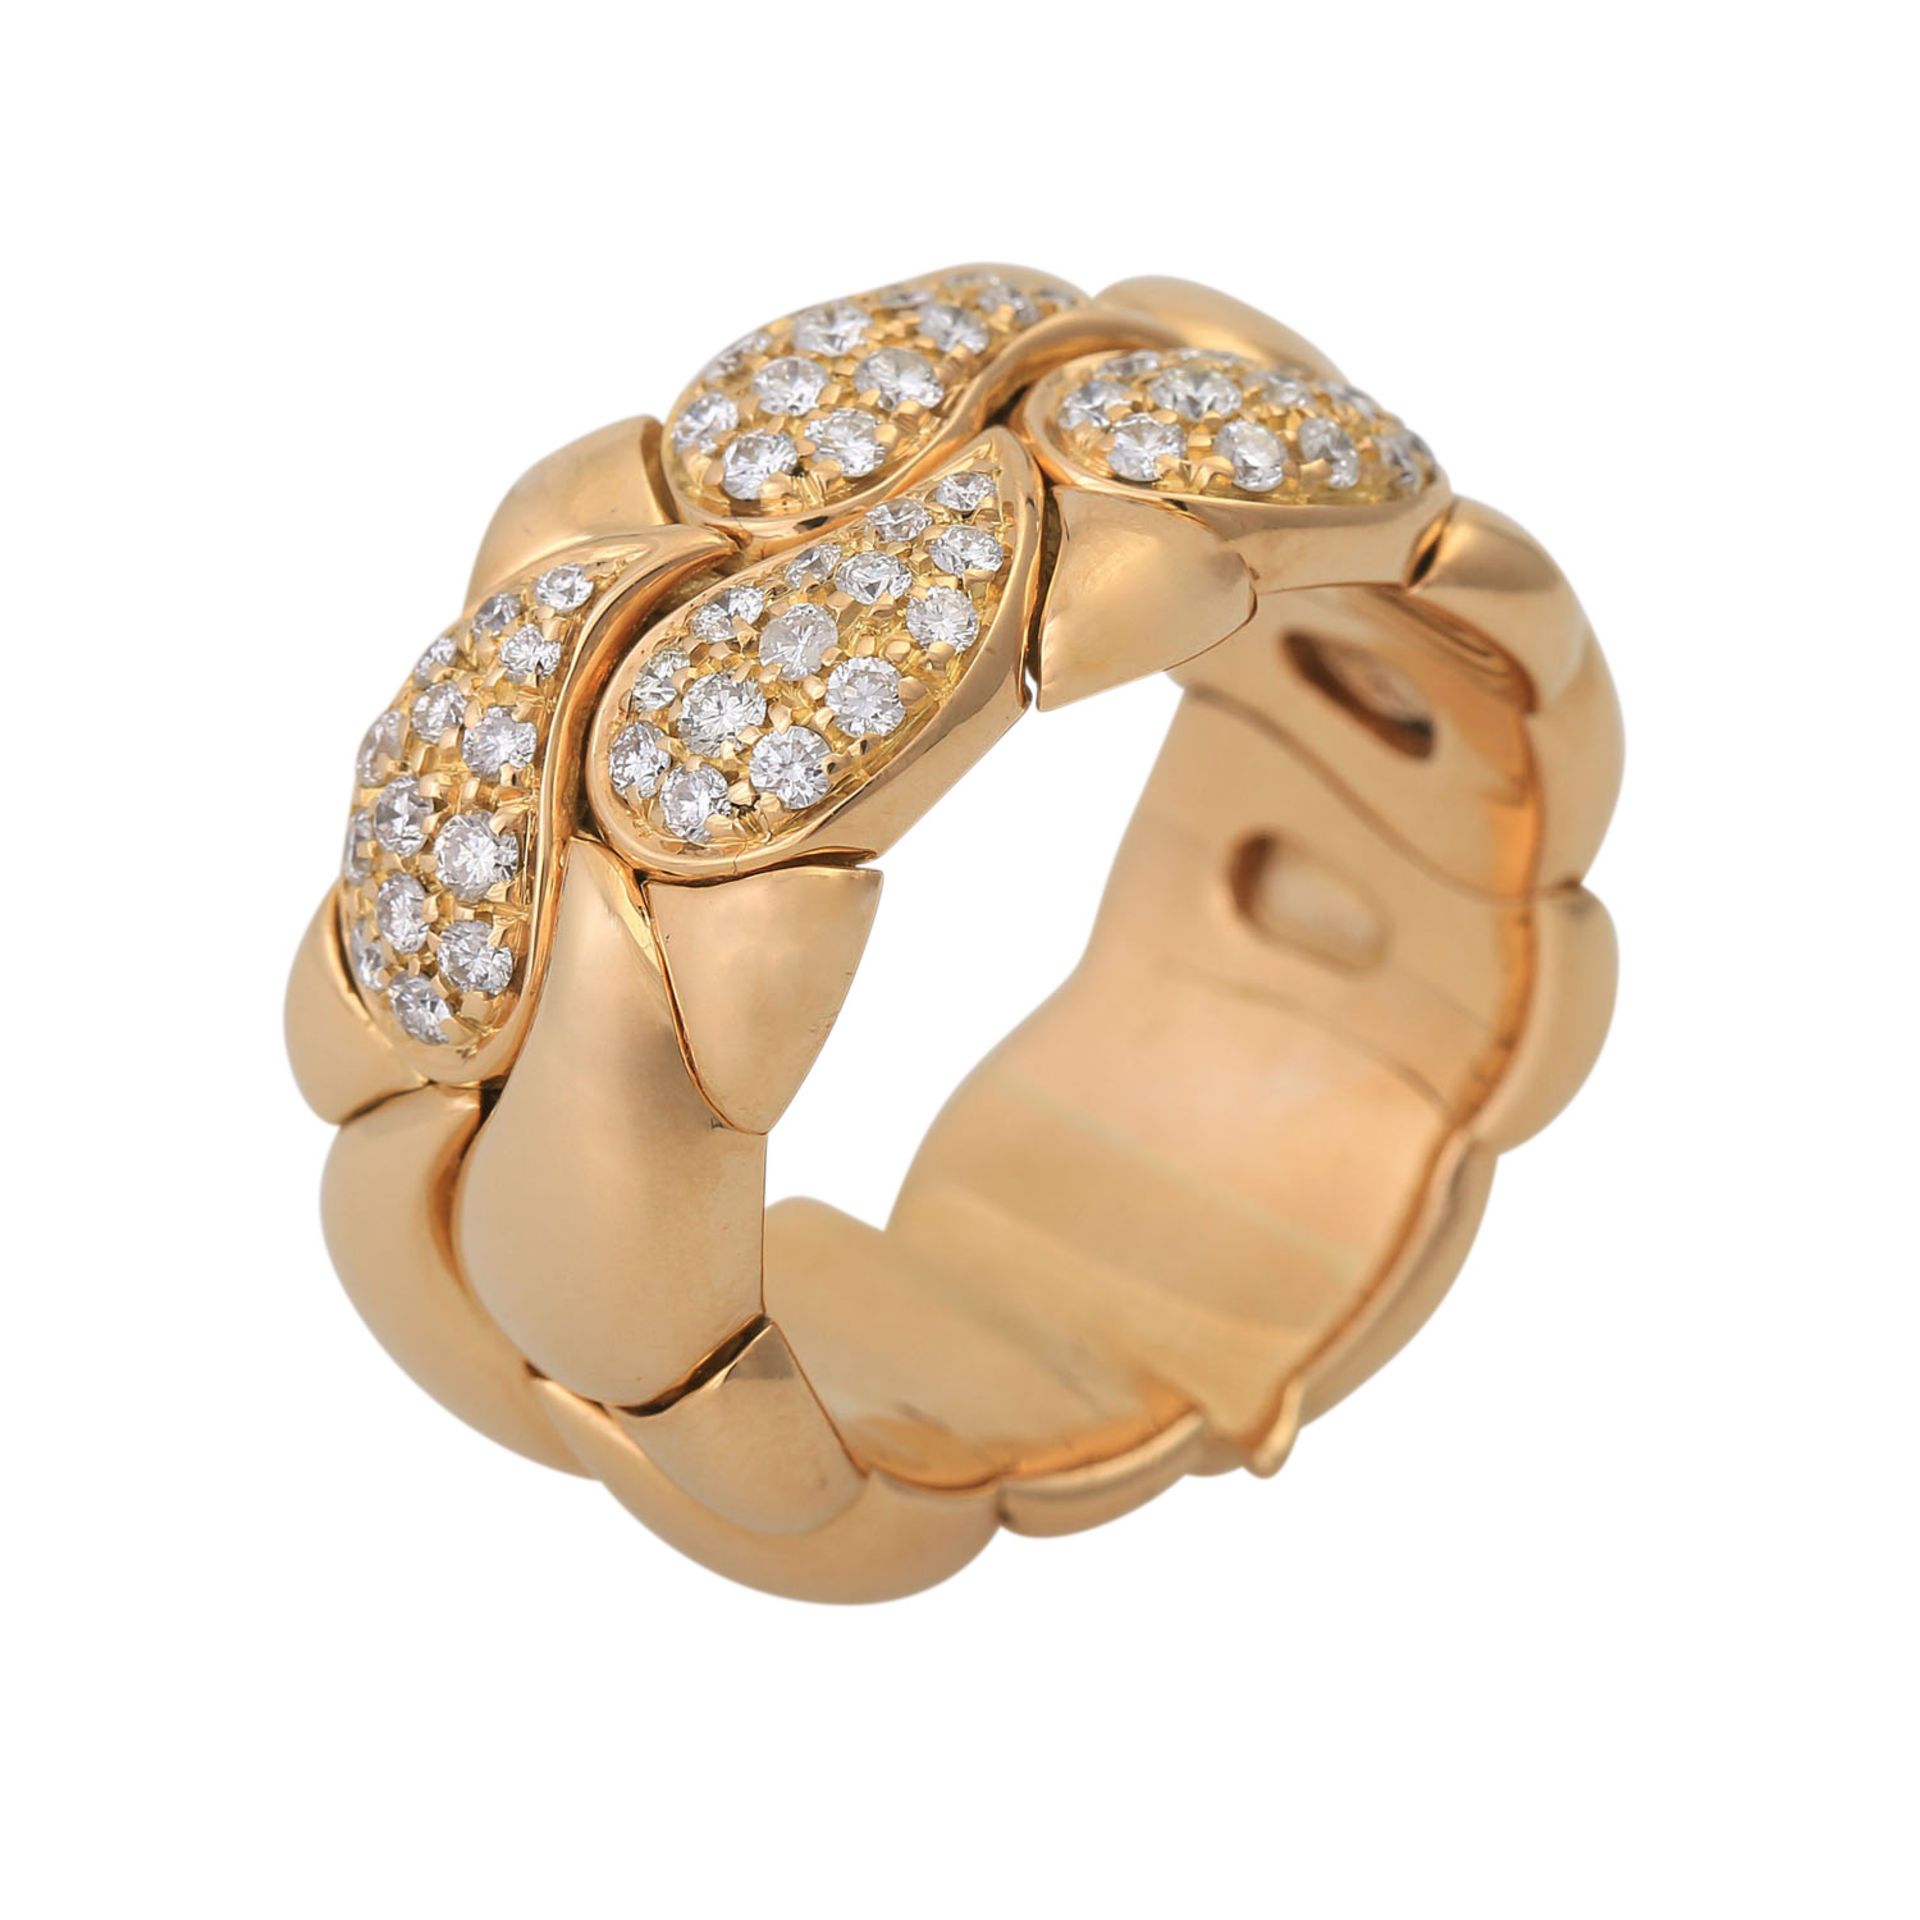 CHOPARD Ring "Casmir" mit Brillantbesatz,GG, NP ca. 8.000 €, RW: 62, nummeriert 2286703. Offene - Bild 5 aus 6